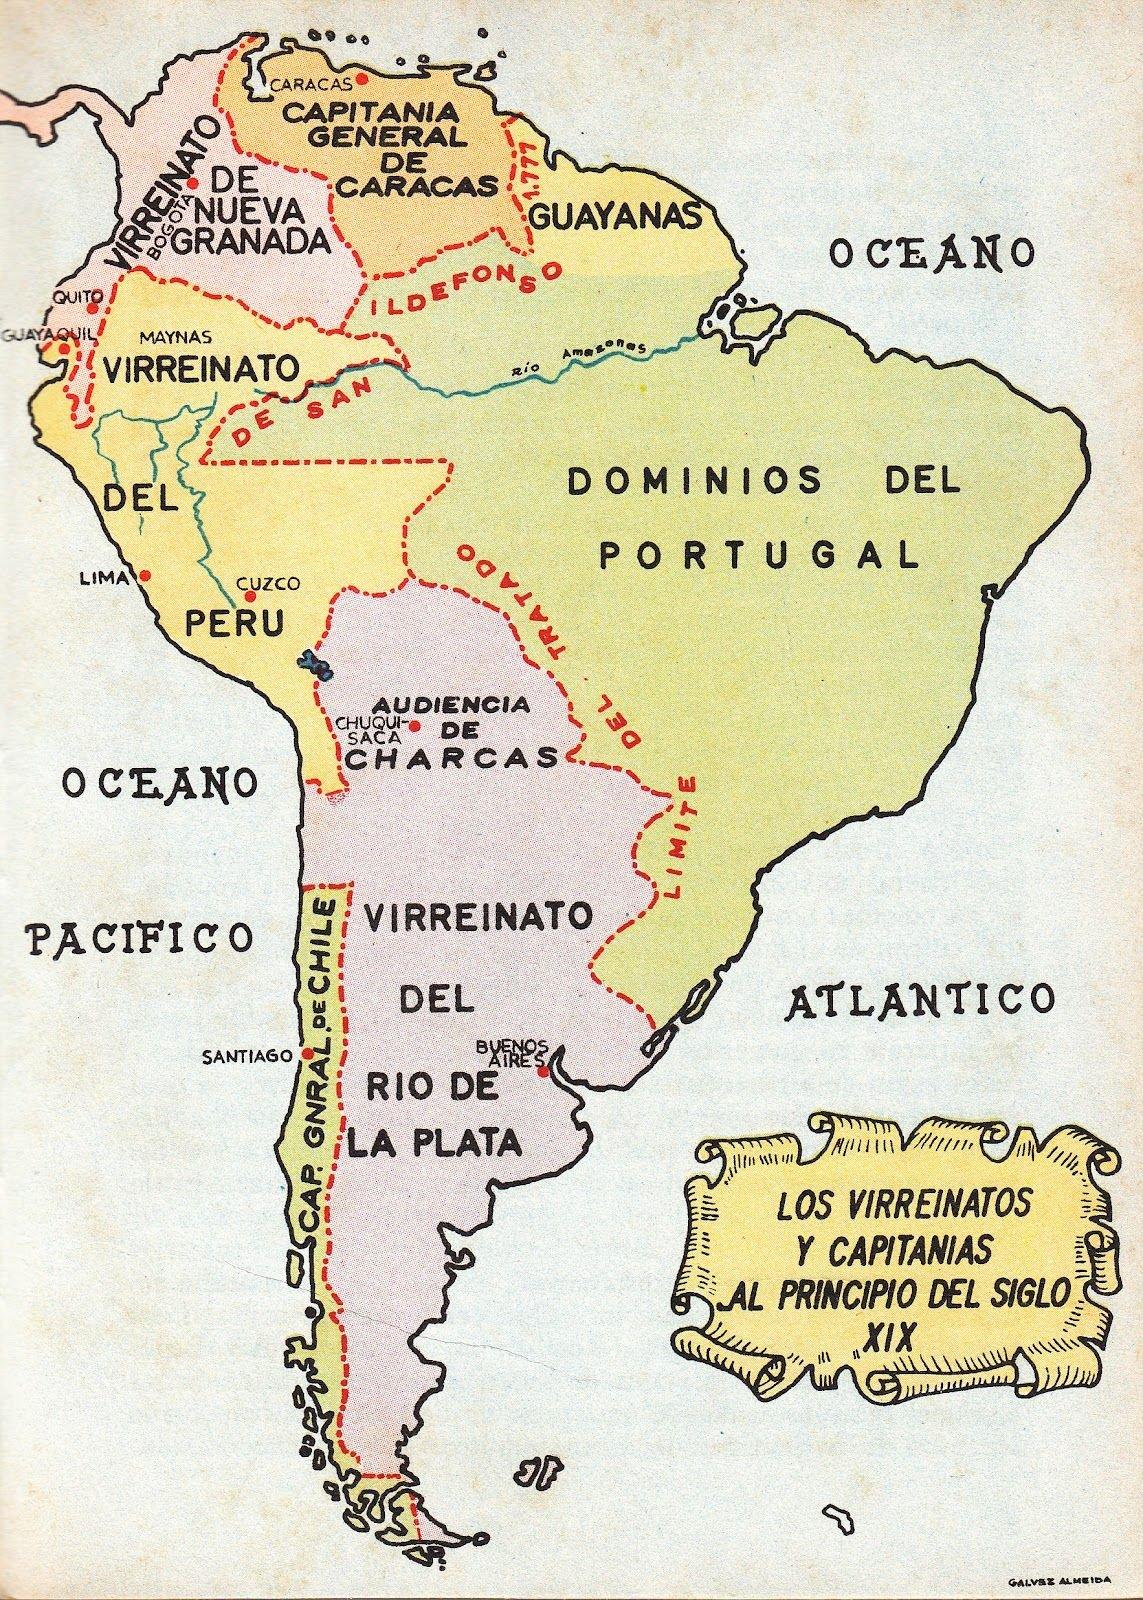 Virreinatos espaoles y Capitanas Generales en Amrica del Sur a principios del Siglo XIX